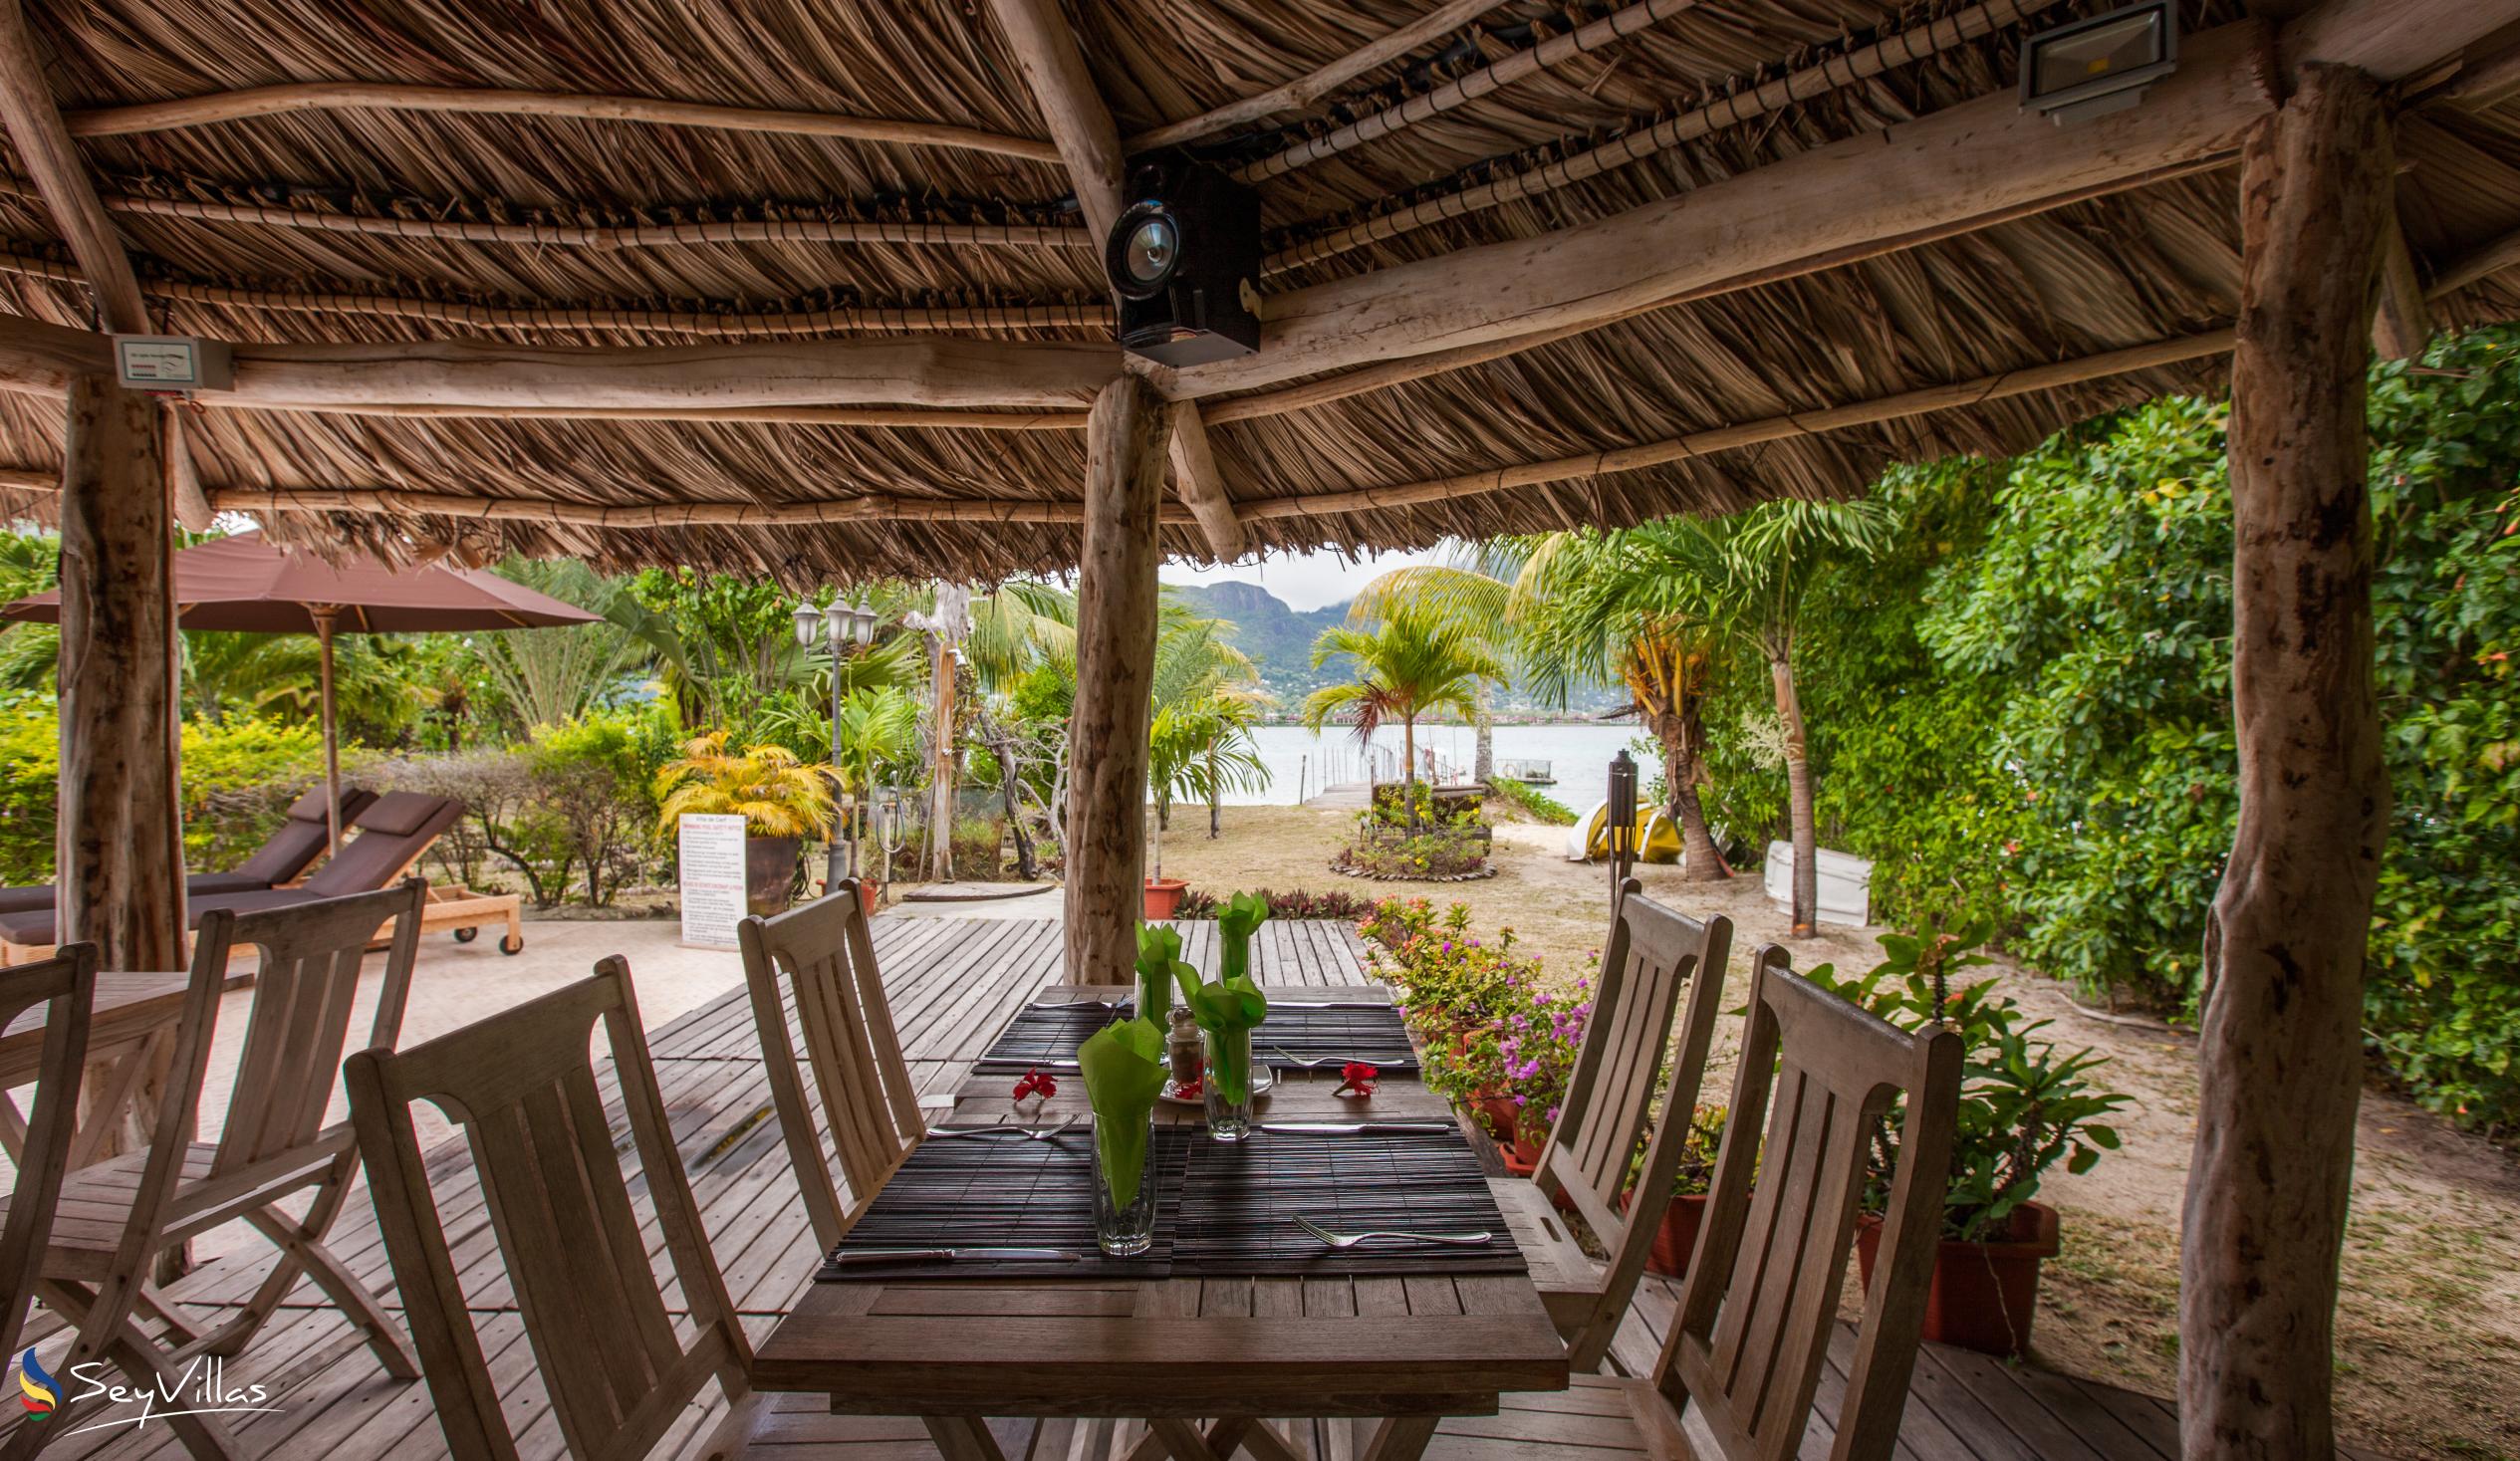 Photo 21: Villa de Cerf - Indoor area - Cerf Island (Seychelles)